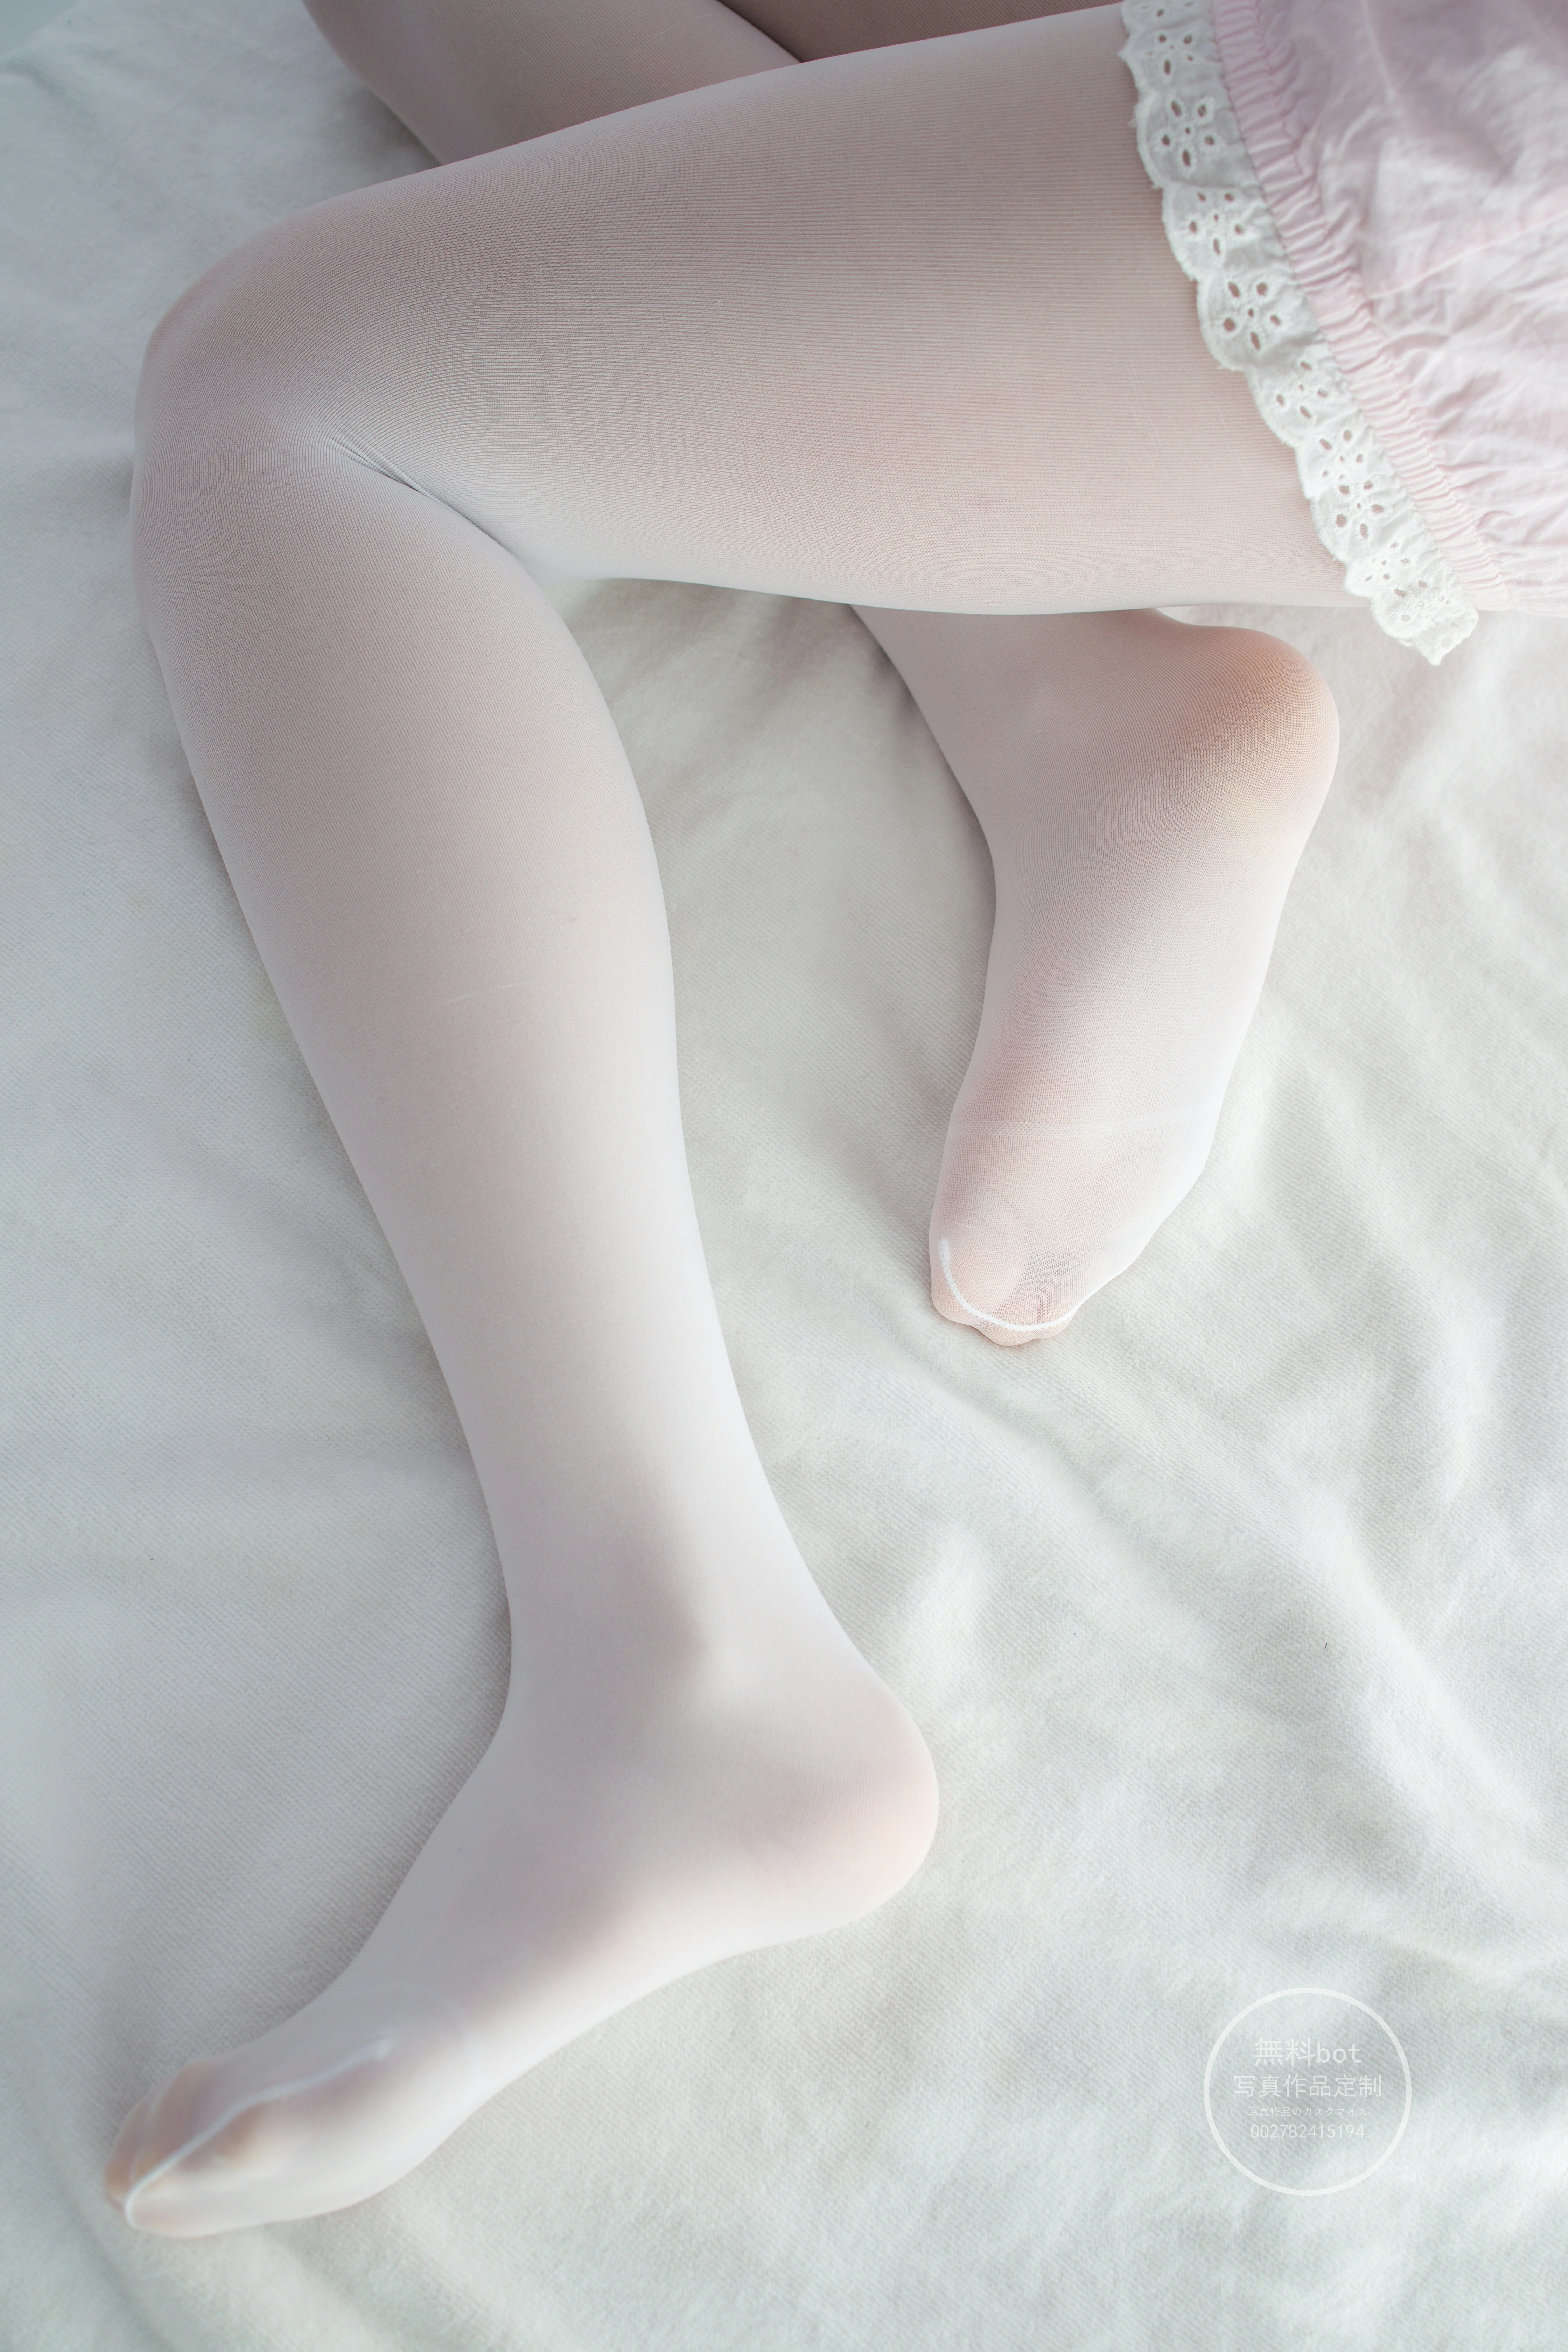 [森萝财团]有料 NO.023 出镜 萝莉女孩 雪糕 白色短袖与粉色短裤加白色丝袜美腿性感私房写真集,